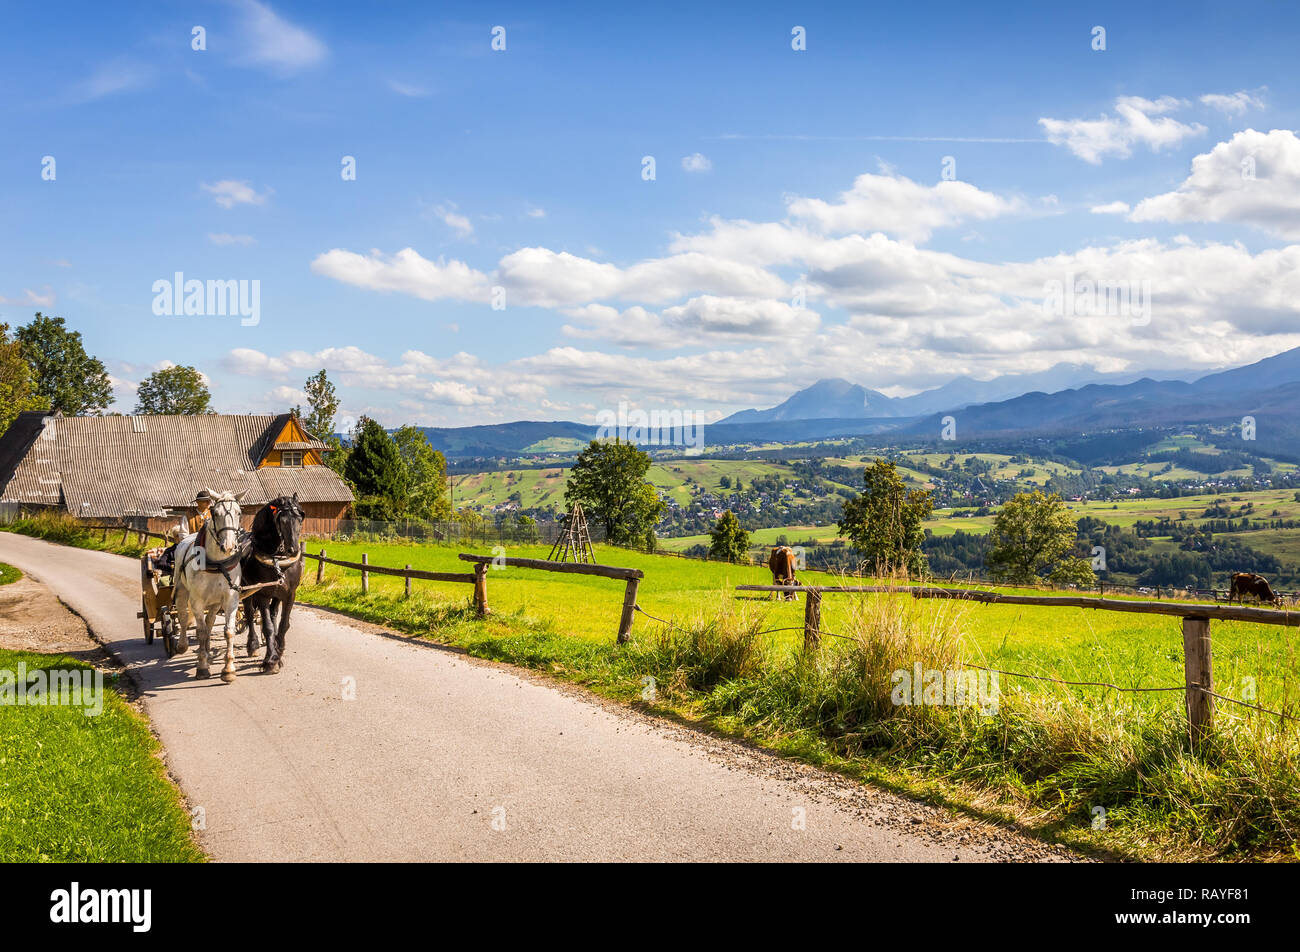 ZAKOPANE, Polen, 16. SEPTEMBER 2018: Sommer Panorama der Tatra und den Berg Rysy, Umgebung von Zakopane Stadt, im südlichen Polen Stockfoto